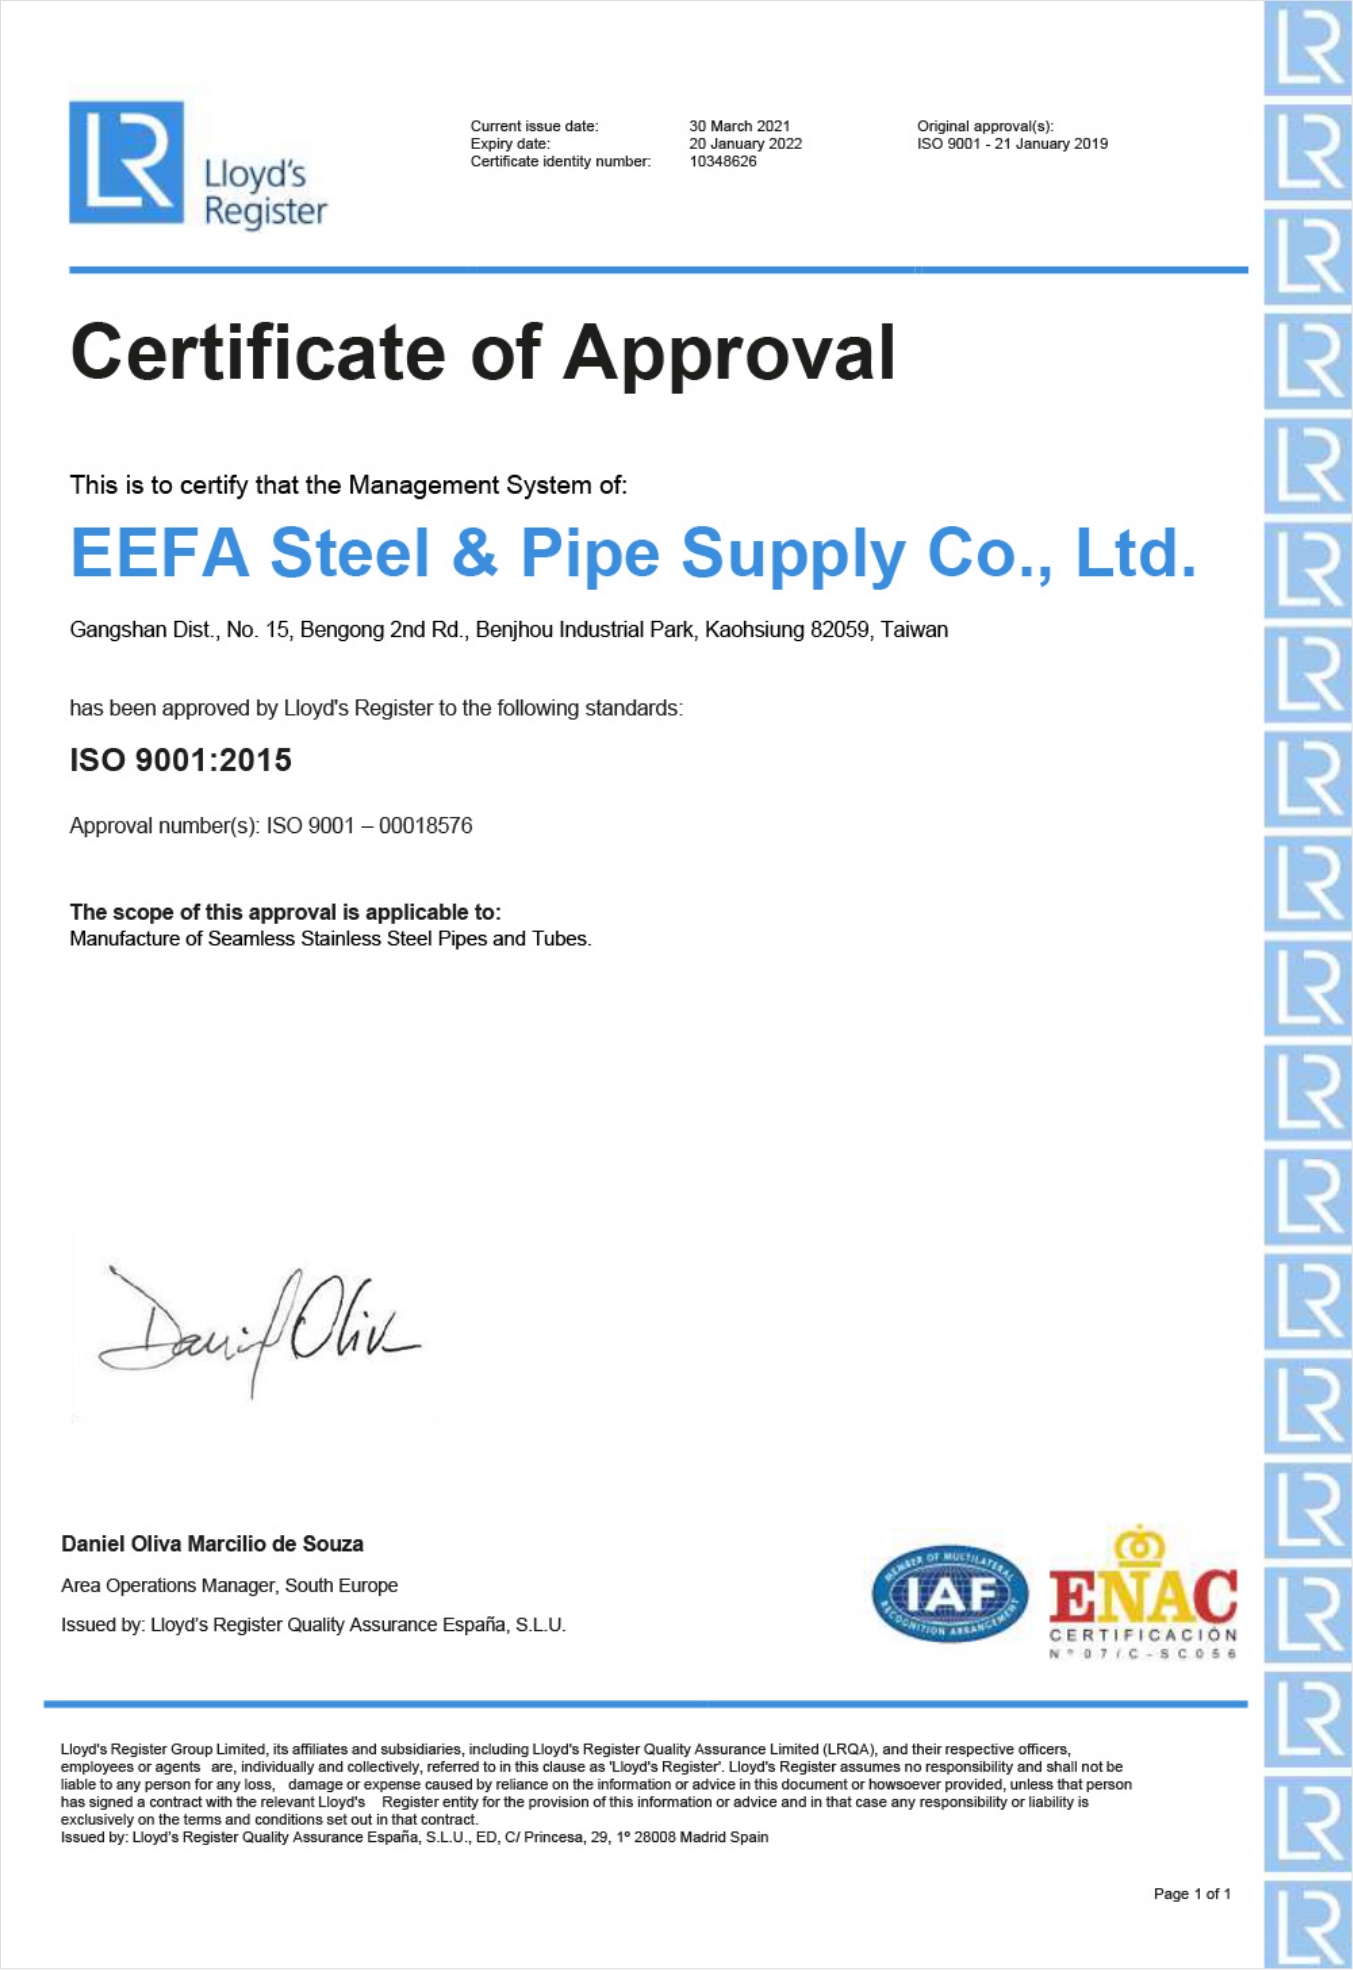 怡發鋼鐵製程先後榮獲英商勞氏英國及歐盟西班牙ENAC的ISO 9001:2015認證 EEFA’s seamless stainless steel tube and pipe manufacturing process conforms to ISO 9001:2015 (certified by Lloyd’s Register in the UK and Lloyd’s Register España/ENAC in Spain, EU)